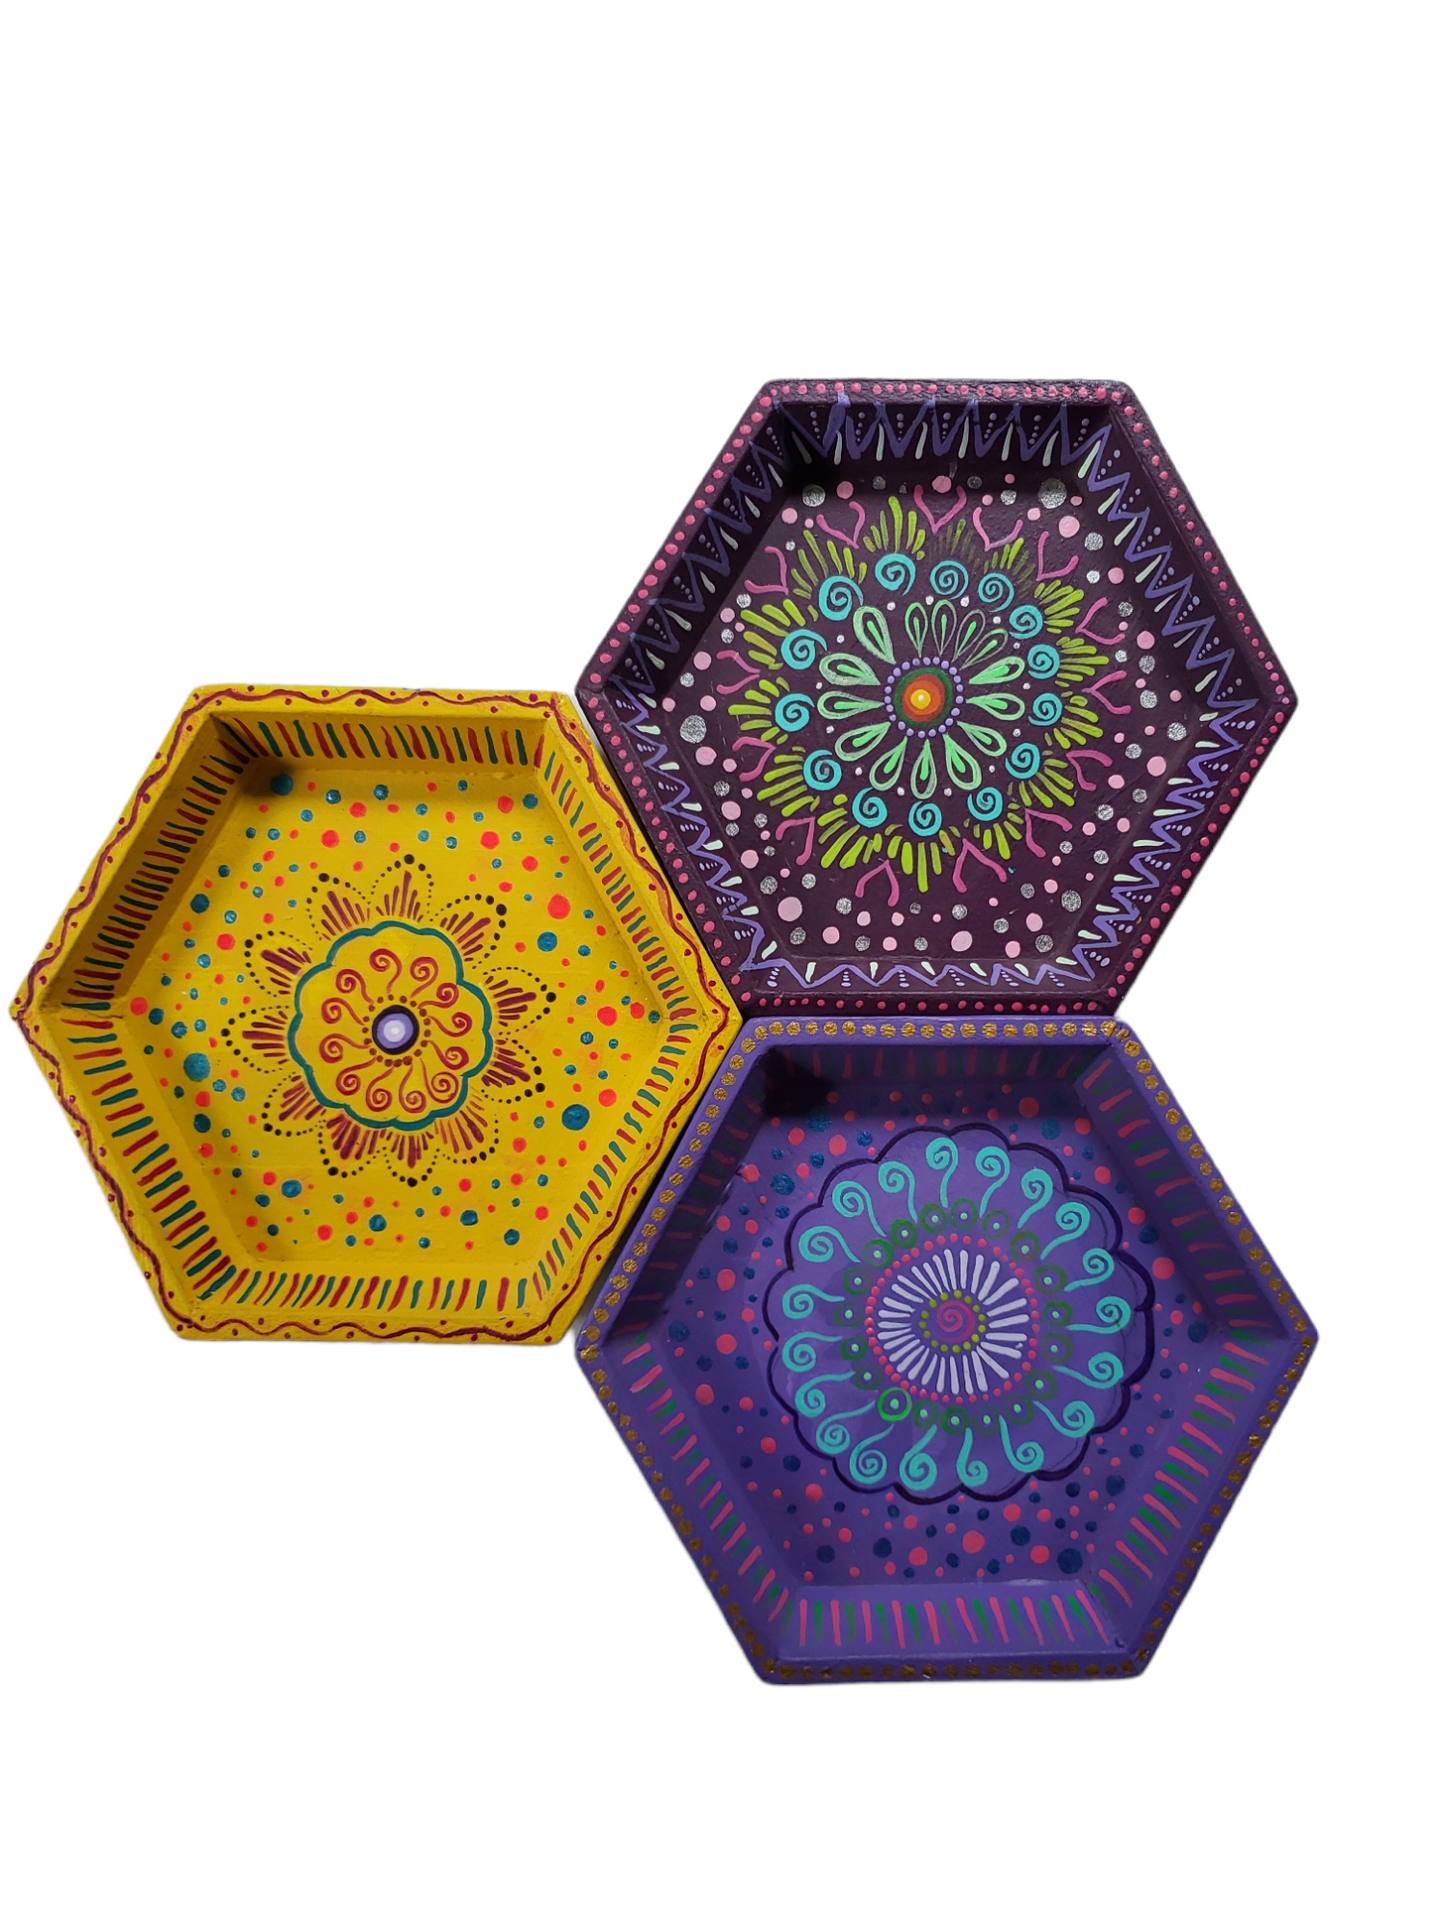 Small Hexagon Tray from Oaxaca, Mexico